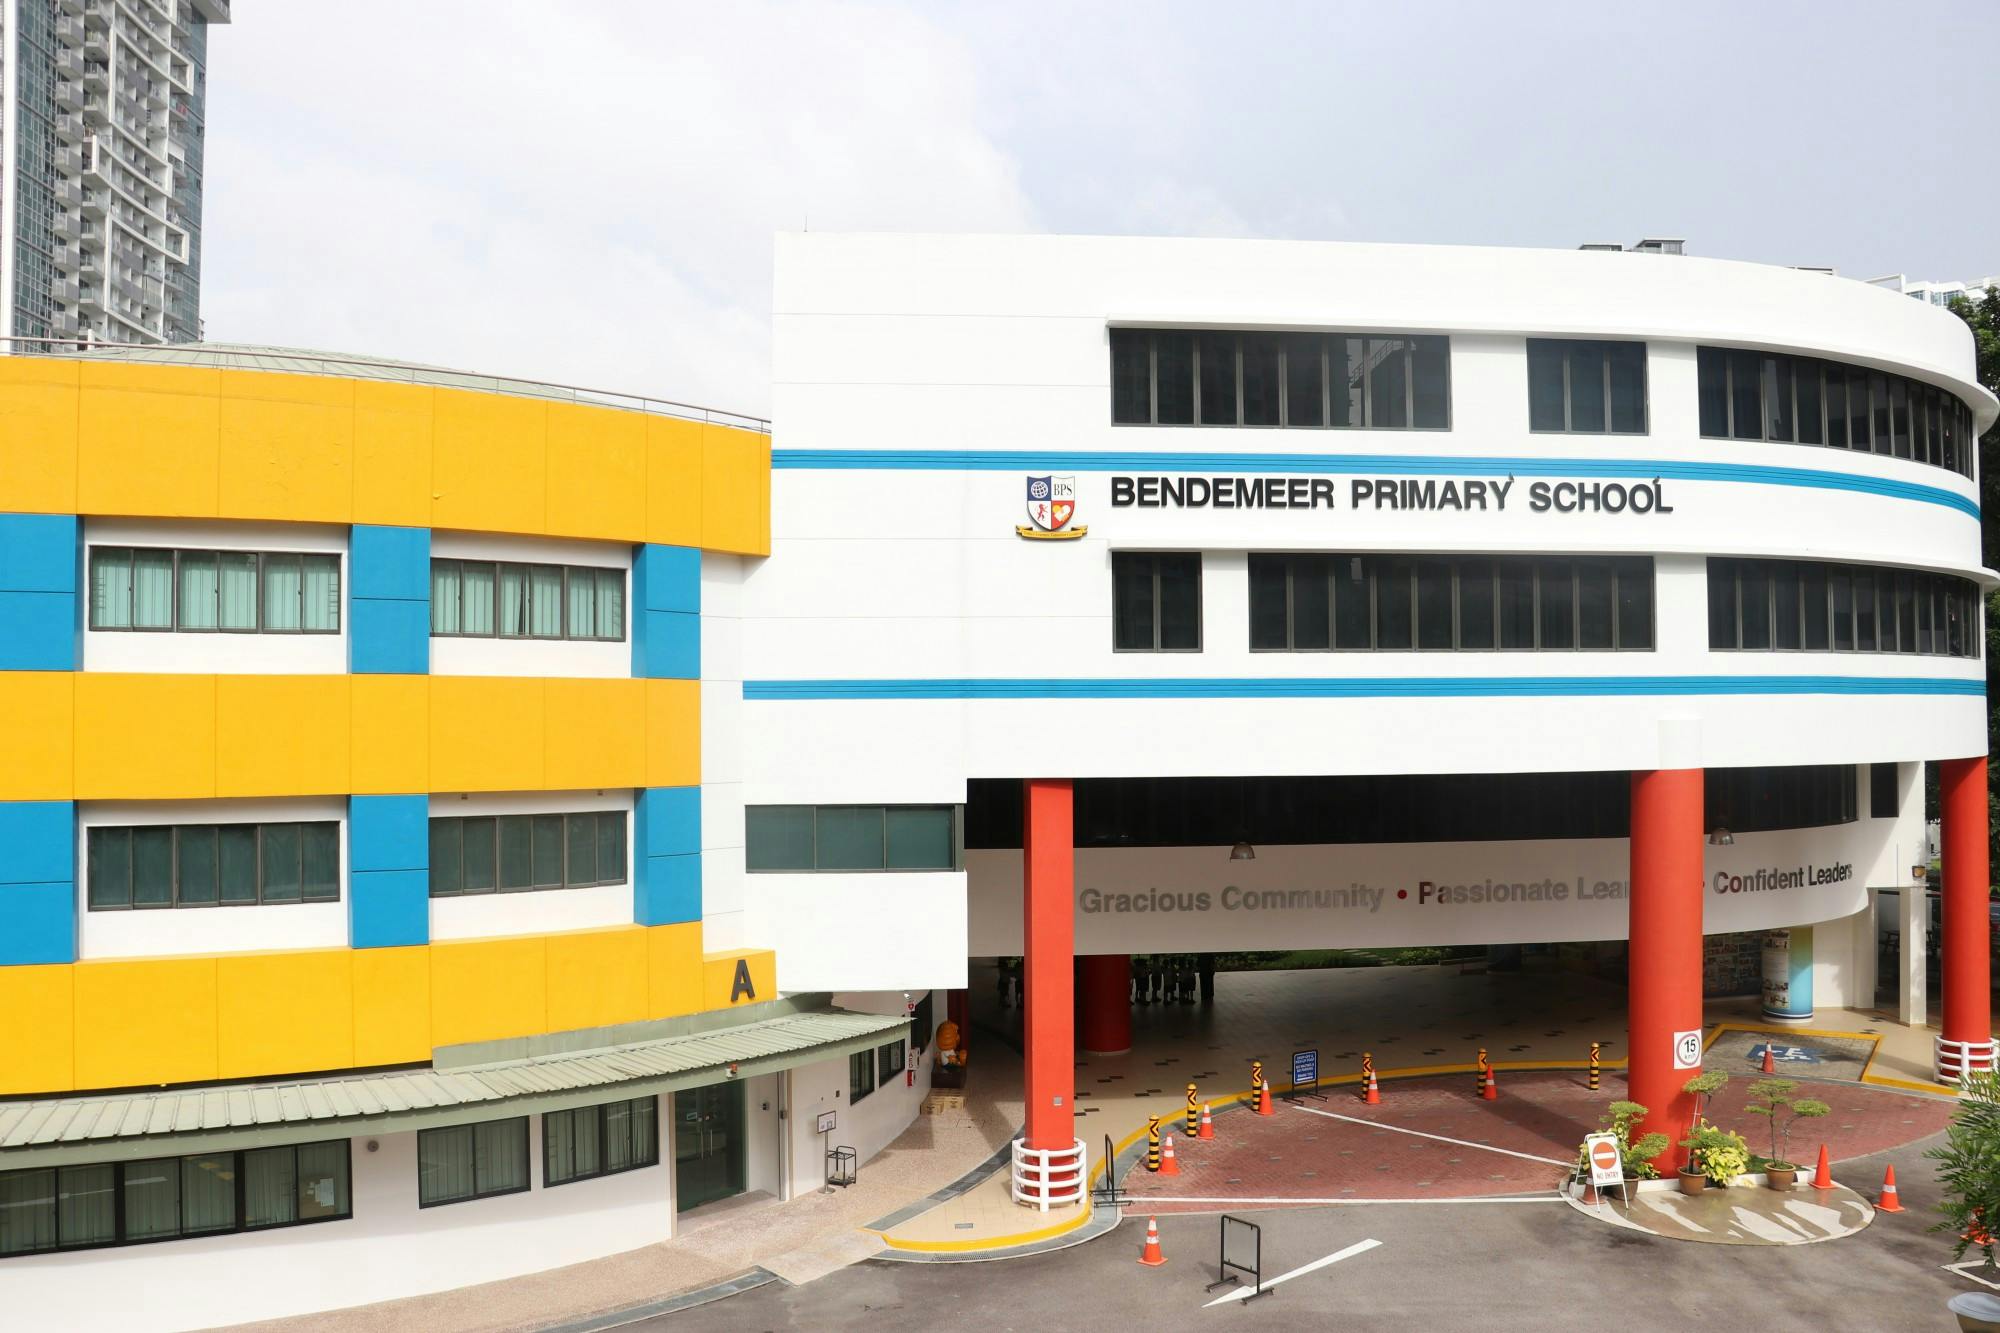 Bendemeer Primary School